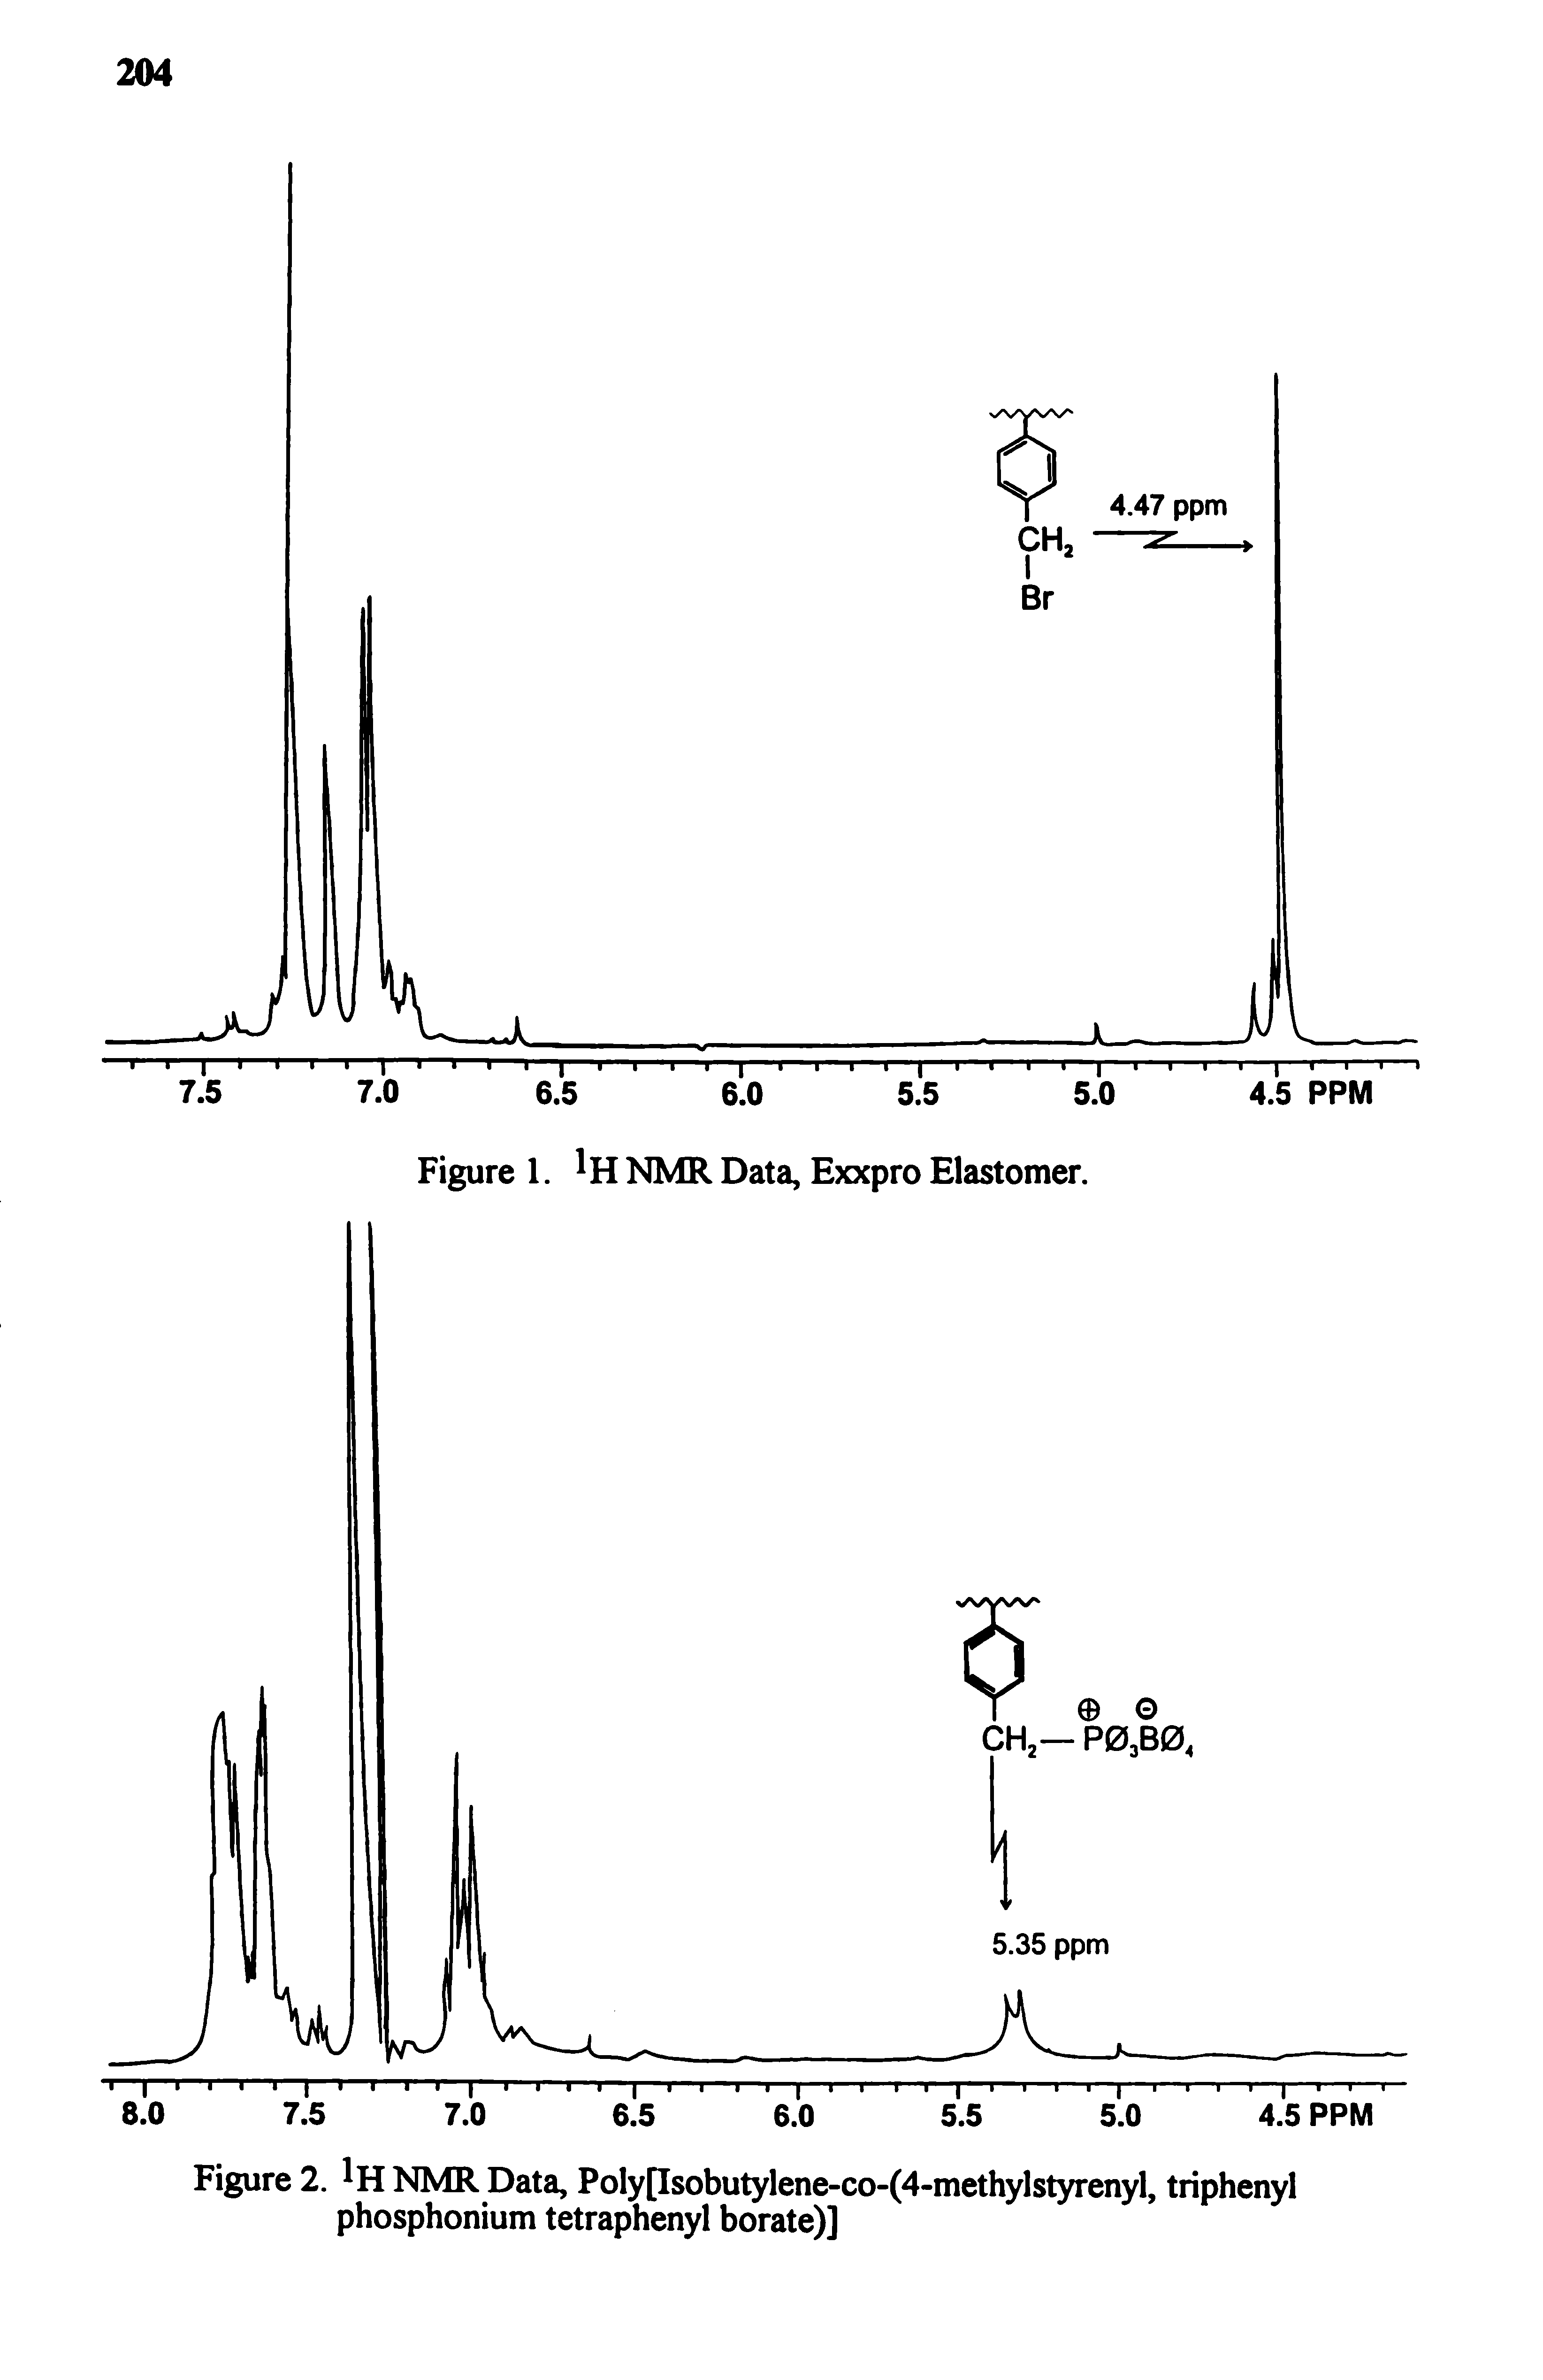 Figure 2. NMR Data, Poly[Isobutylene-co-(4-methylstyrenyl, triphenyl phosphonium tetraphenyl borate)]...